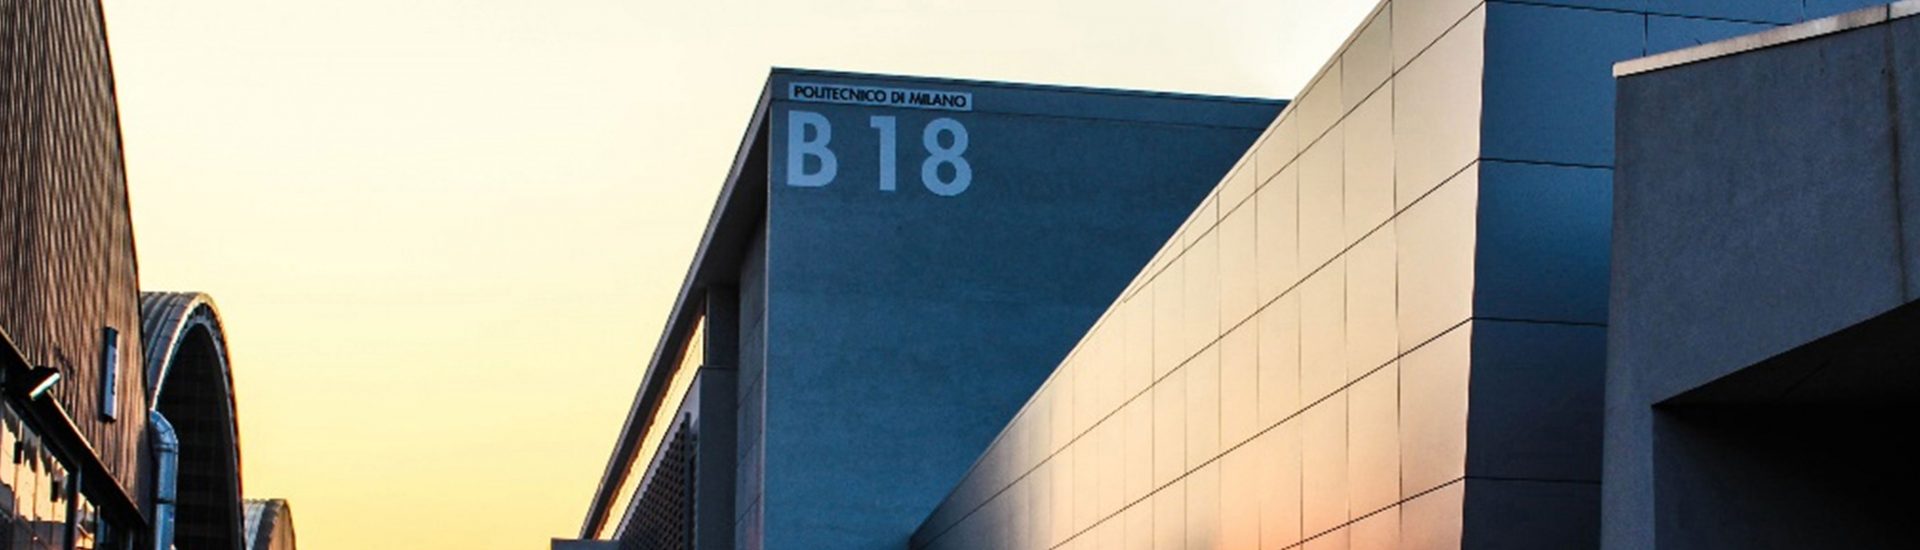 Edificio B18 Bovisa